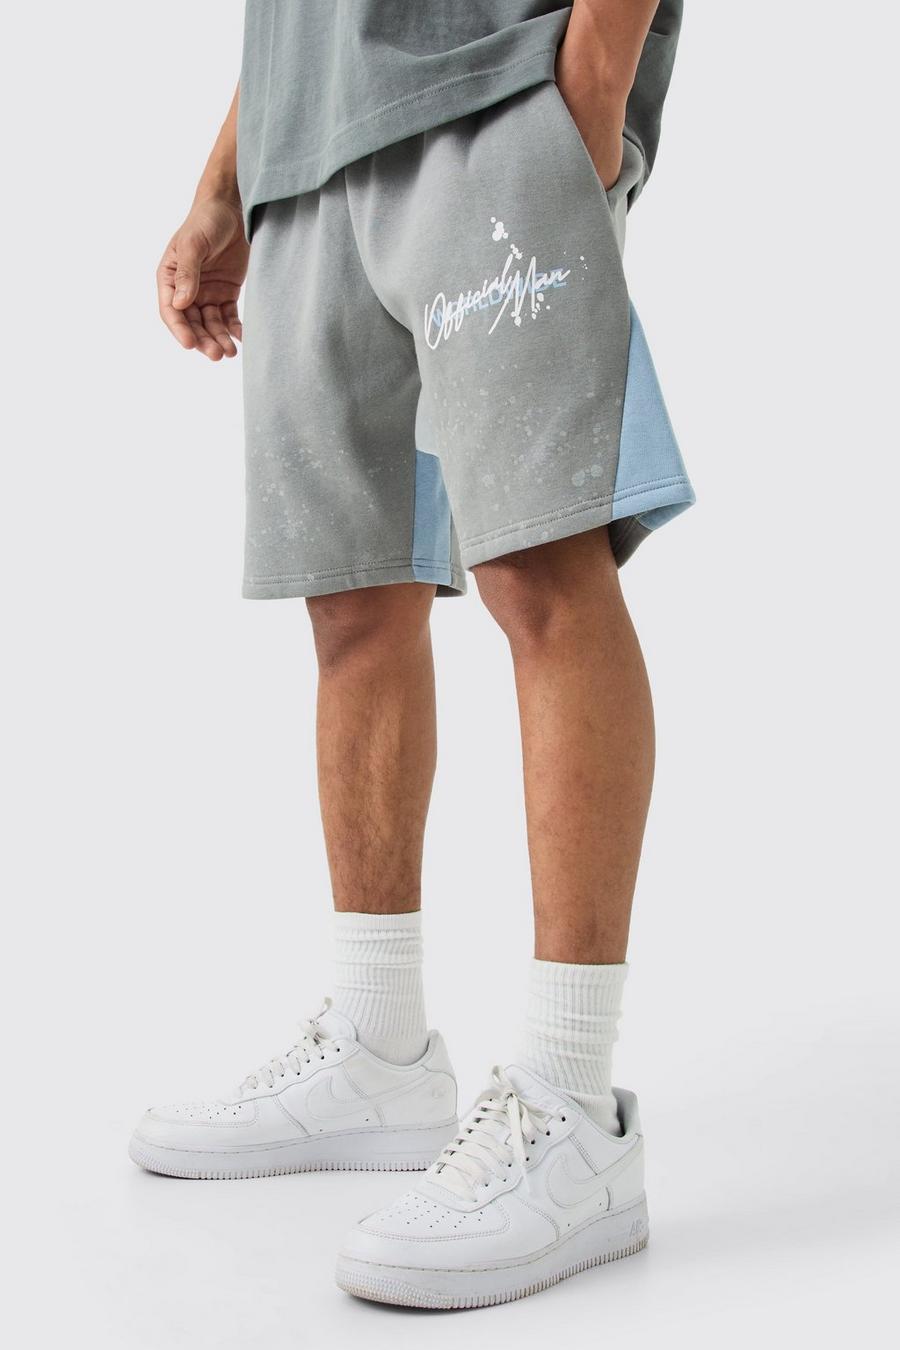 Lockere Shorts mit Farbspritzern, Grey image number 1